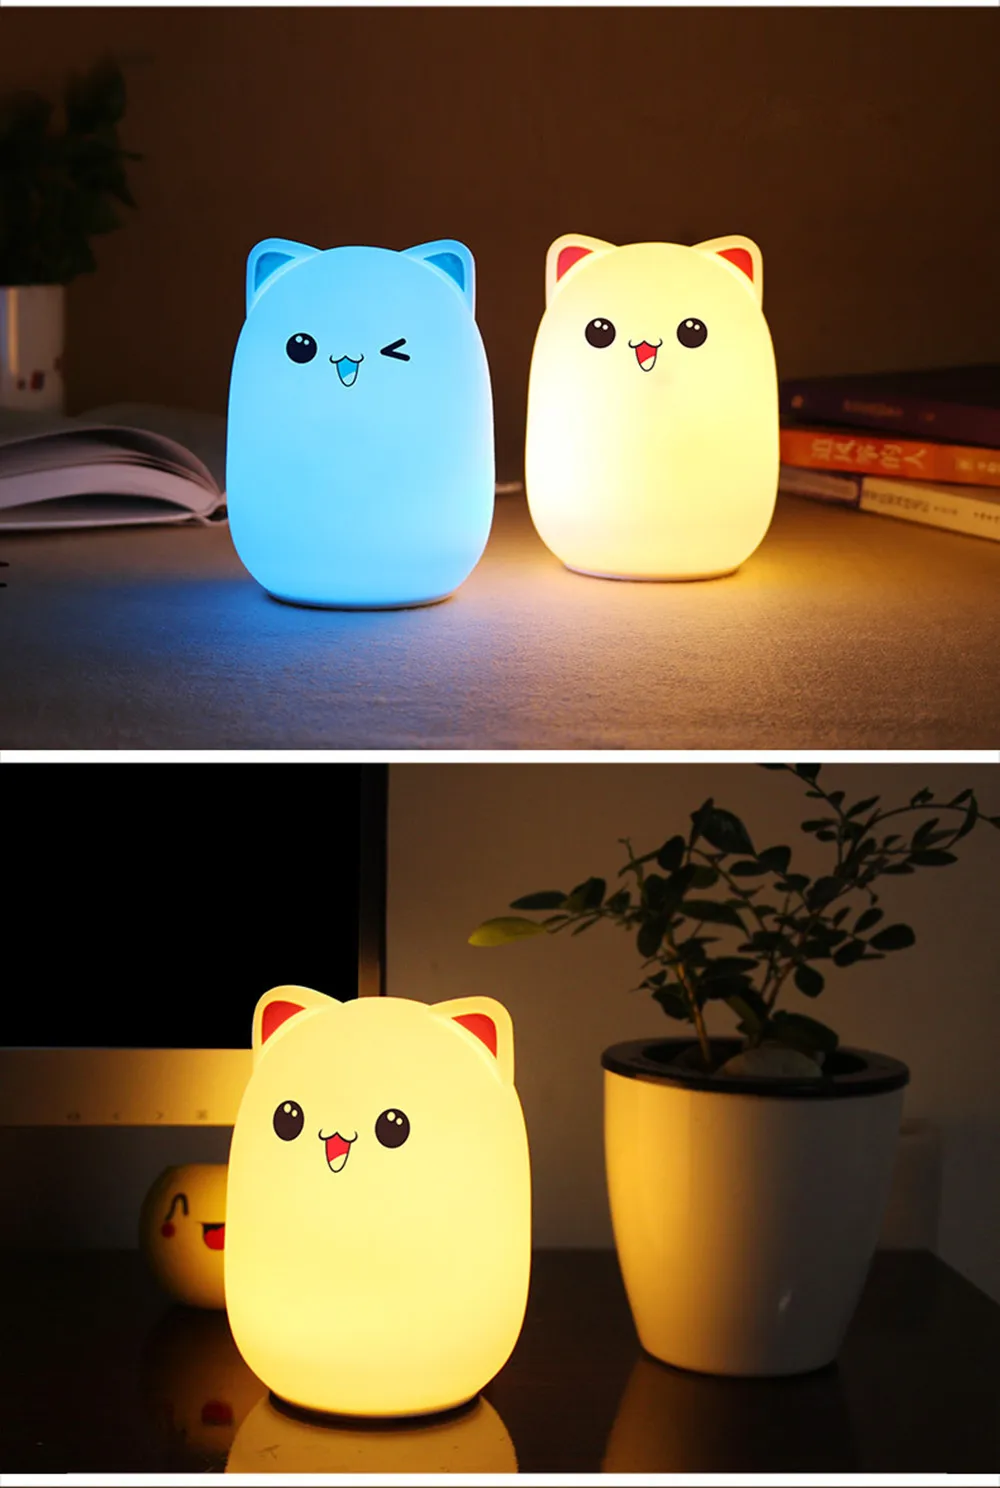 Сенсорный экран Сенсор цветное кошачье светодиодный Ночной светильник дистанционного Управление RGB силиконовые USB Перезаряжаемые Спальня ночники, подарок на Рождество, подарок для детей